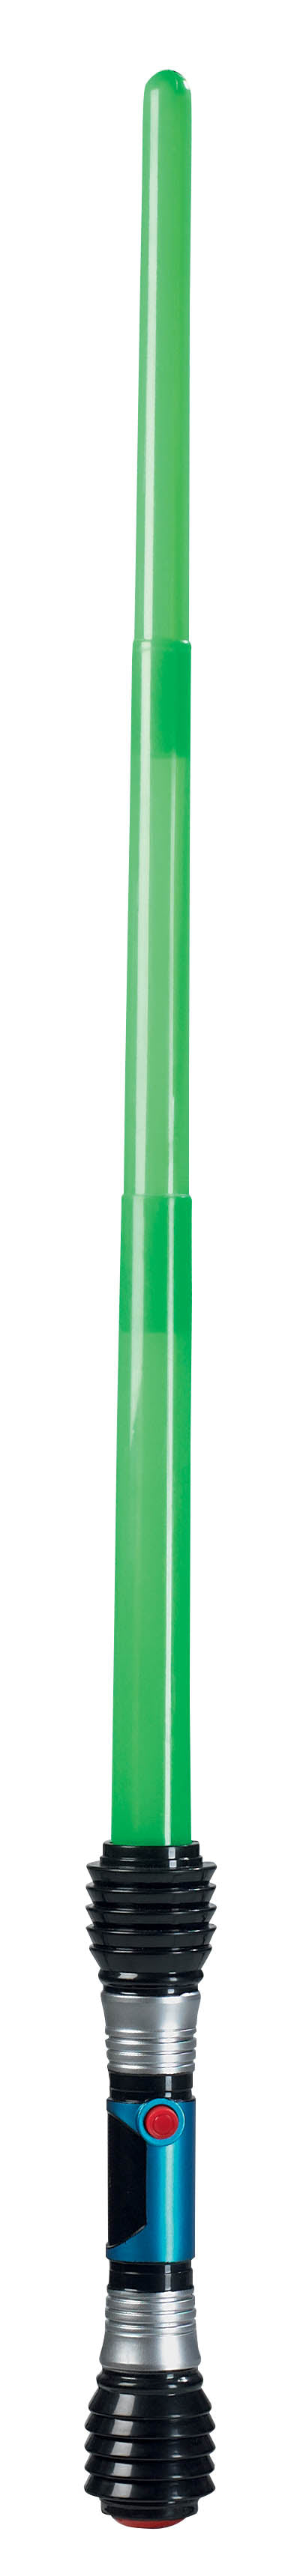 Αποκριάτικο Αξεσουάρ Φωτόσπαθο με ήχο & φως πράσινο (πτυσσόμενο) FF80632